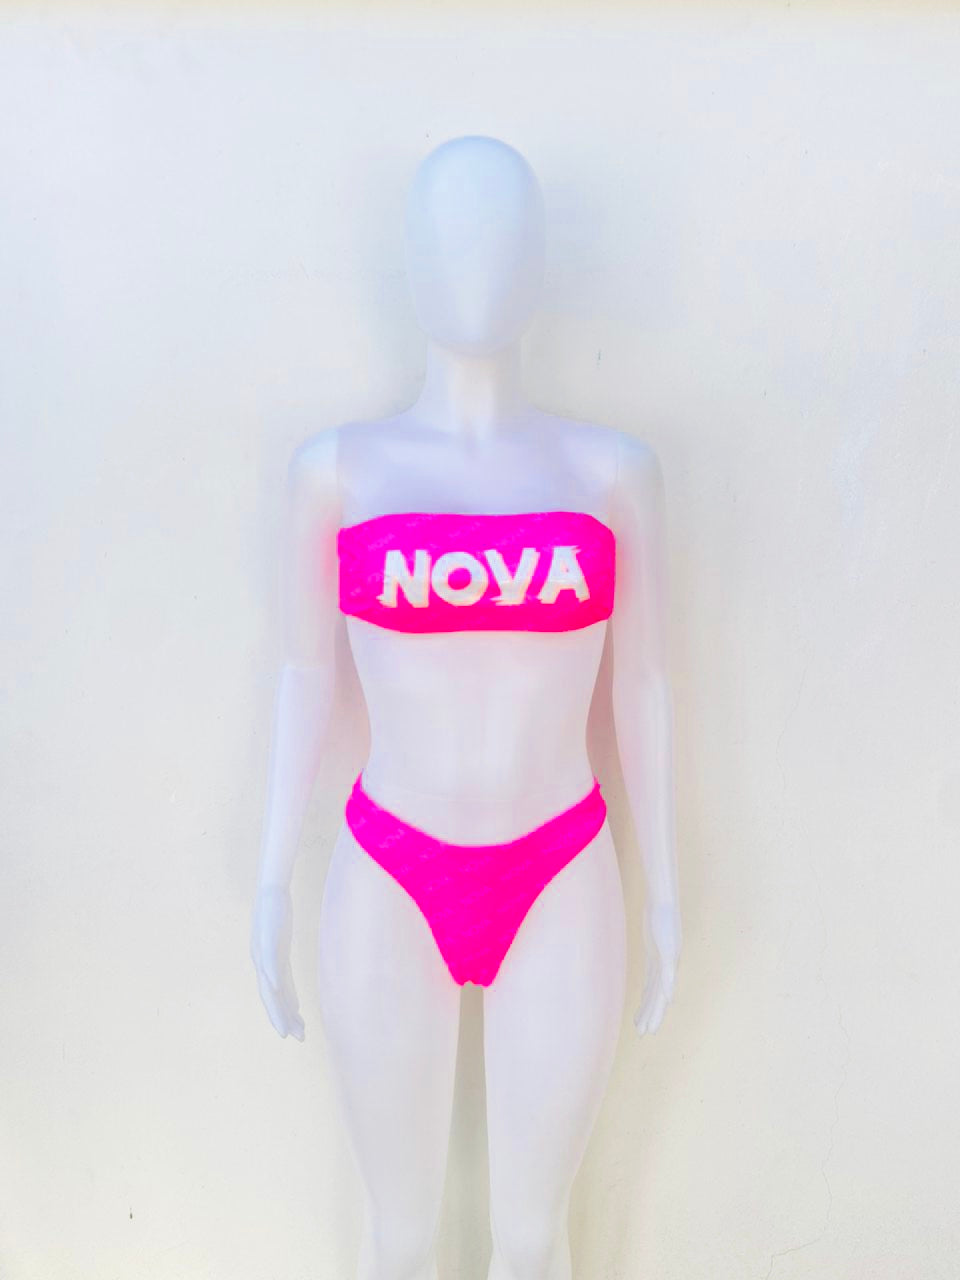 Biquini Fashion Nova original, rosado Fuscia estraple top con letras NOVA en color blanco en el centro, panti con letras NOVA poco visible.